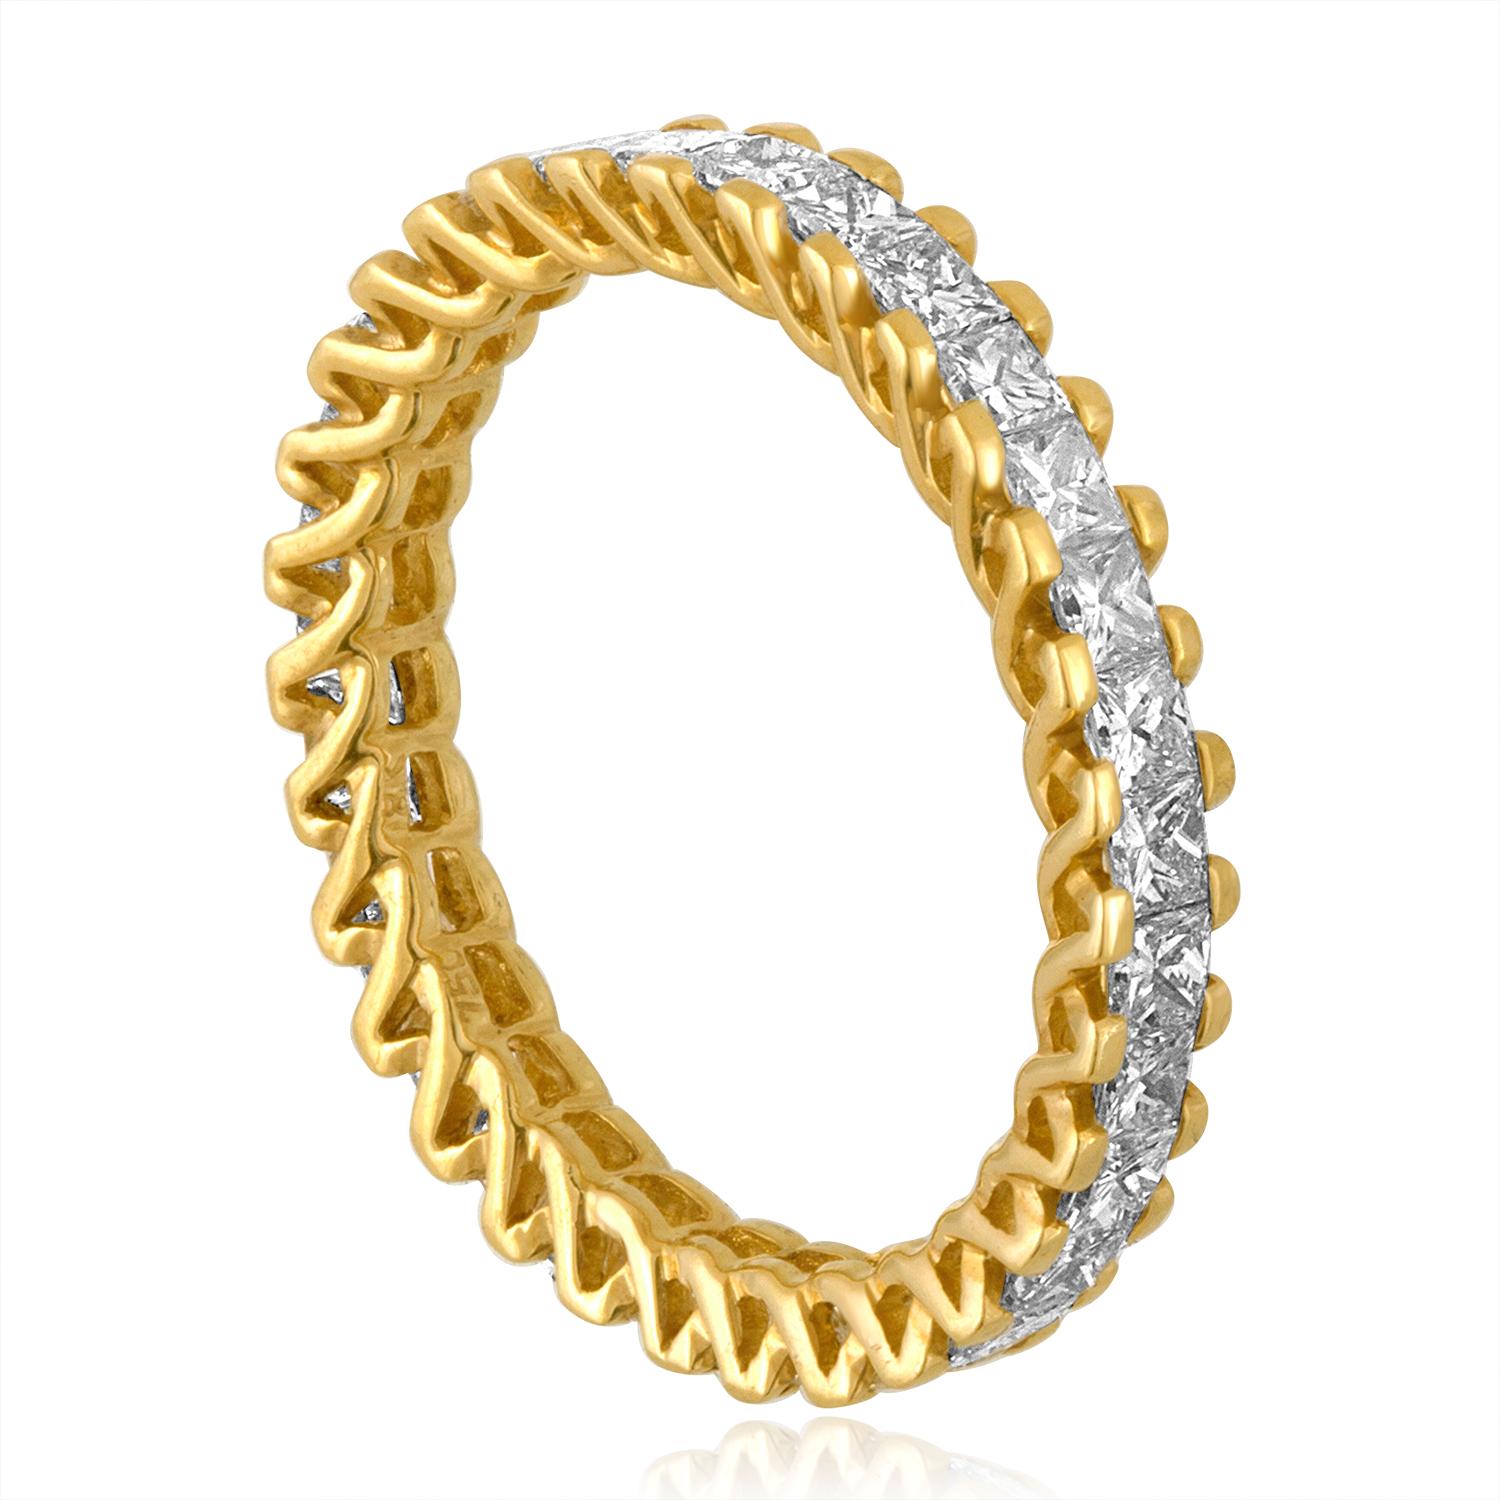 Sehr ungewöhnliches Gold Eternity Band
Der Ring ist 18K Gelbgold
Es gibt 1,85 Karat F VS Princess Cut Diamanten
Der Ring besteht aus 31 Steinen.
Der Ring ist eine Größe 7, nicht sizable.
Der Ring wiegt 2,4 Gramm